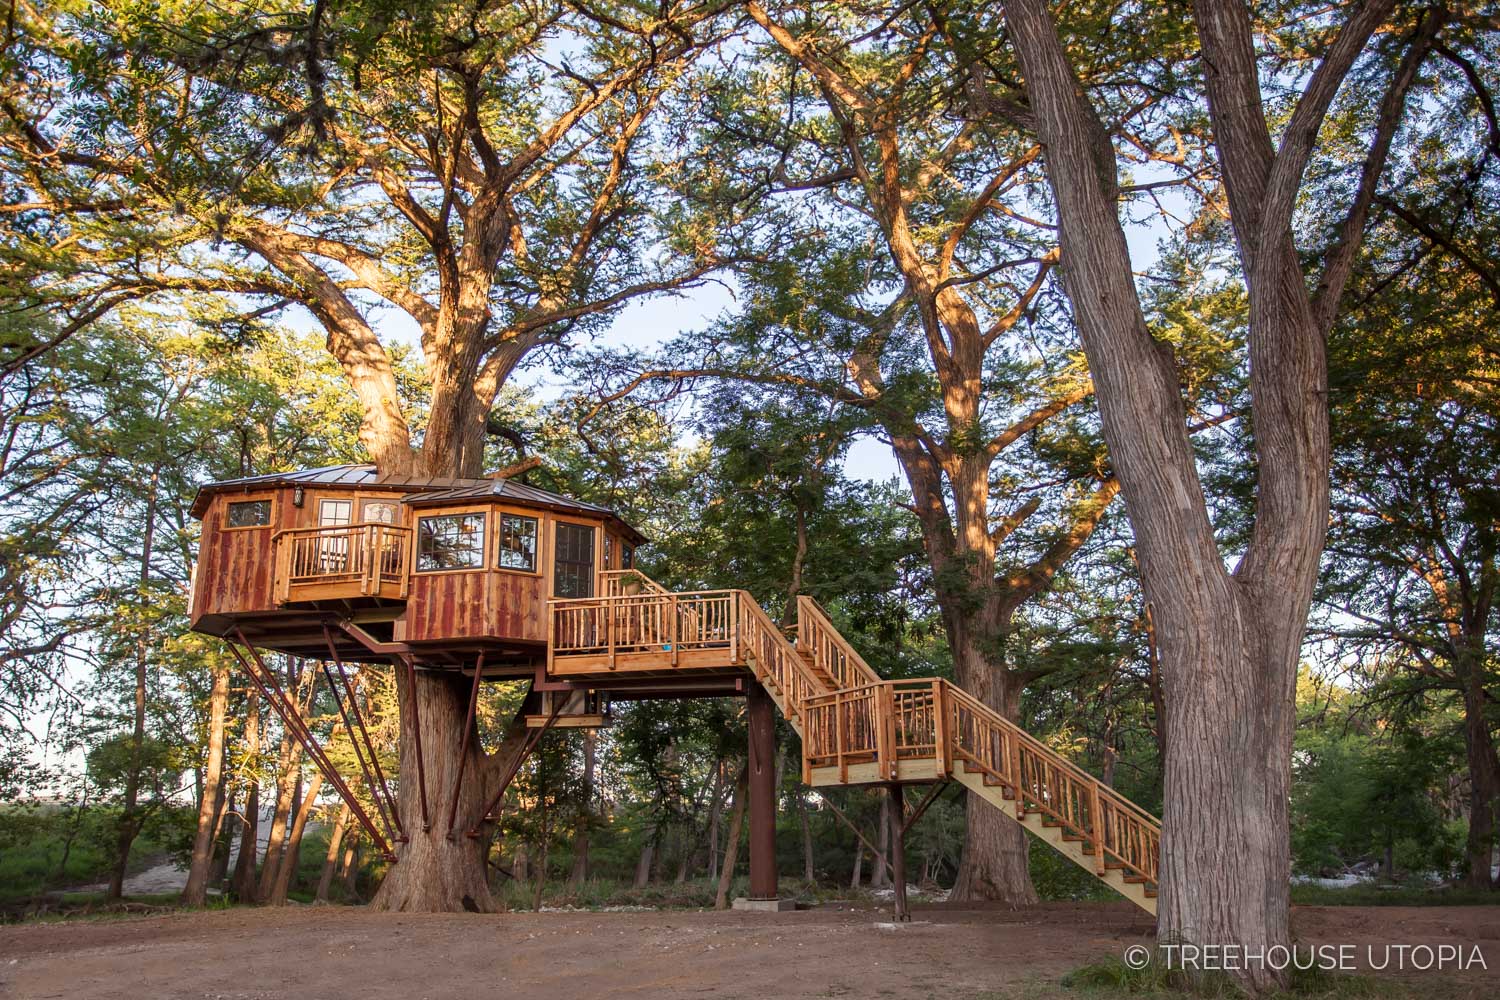  Carousel at Treehouse Utopia 